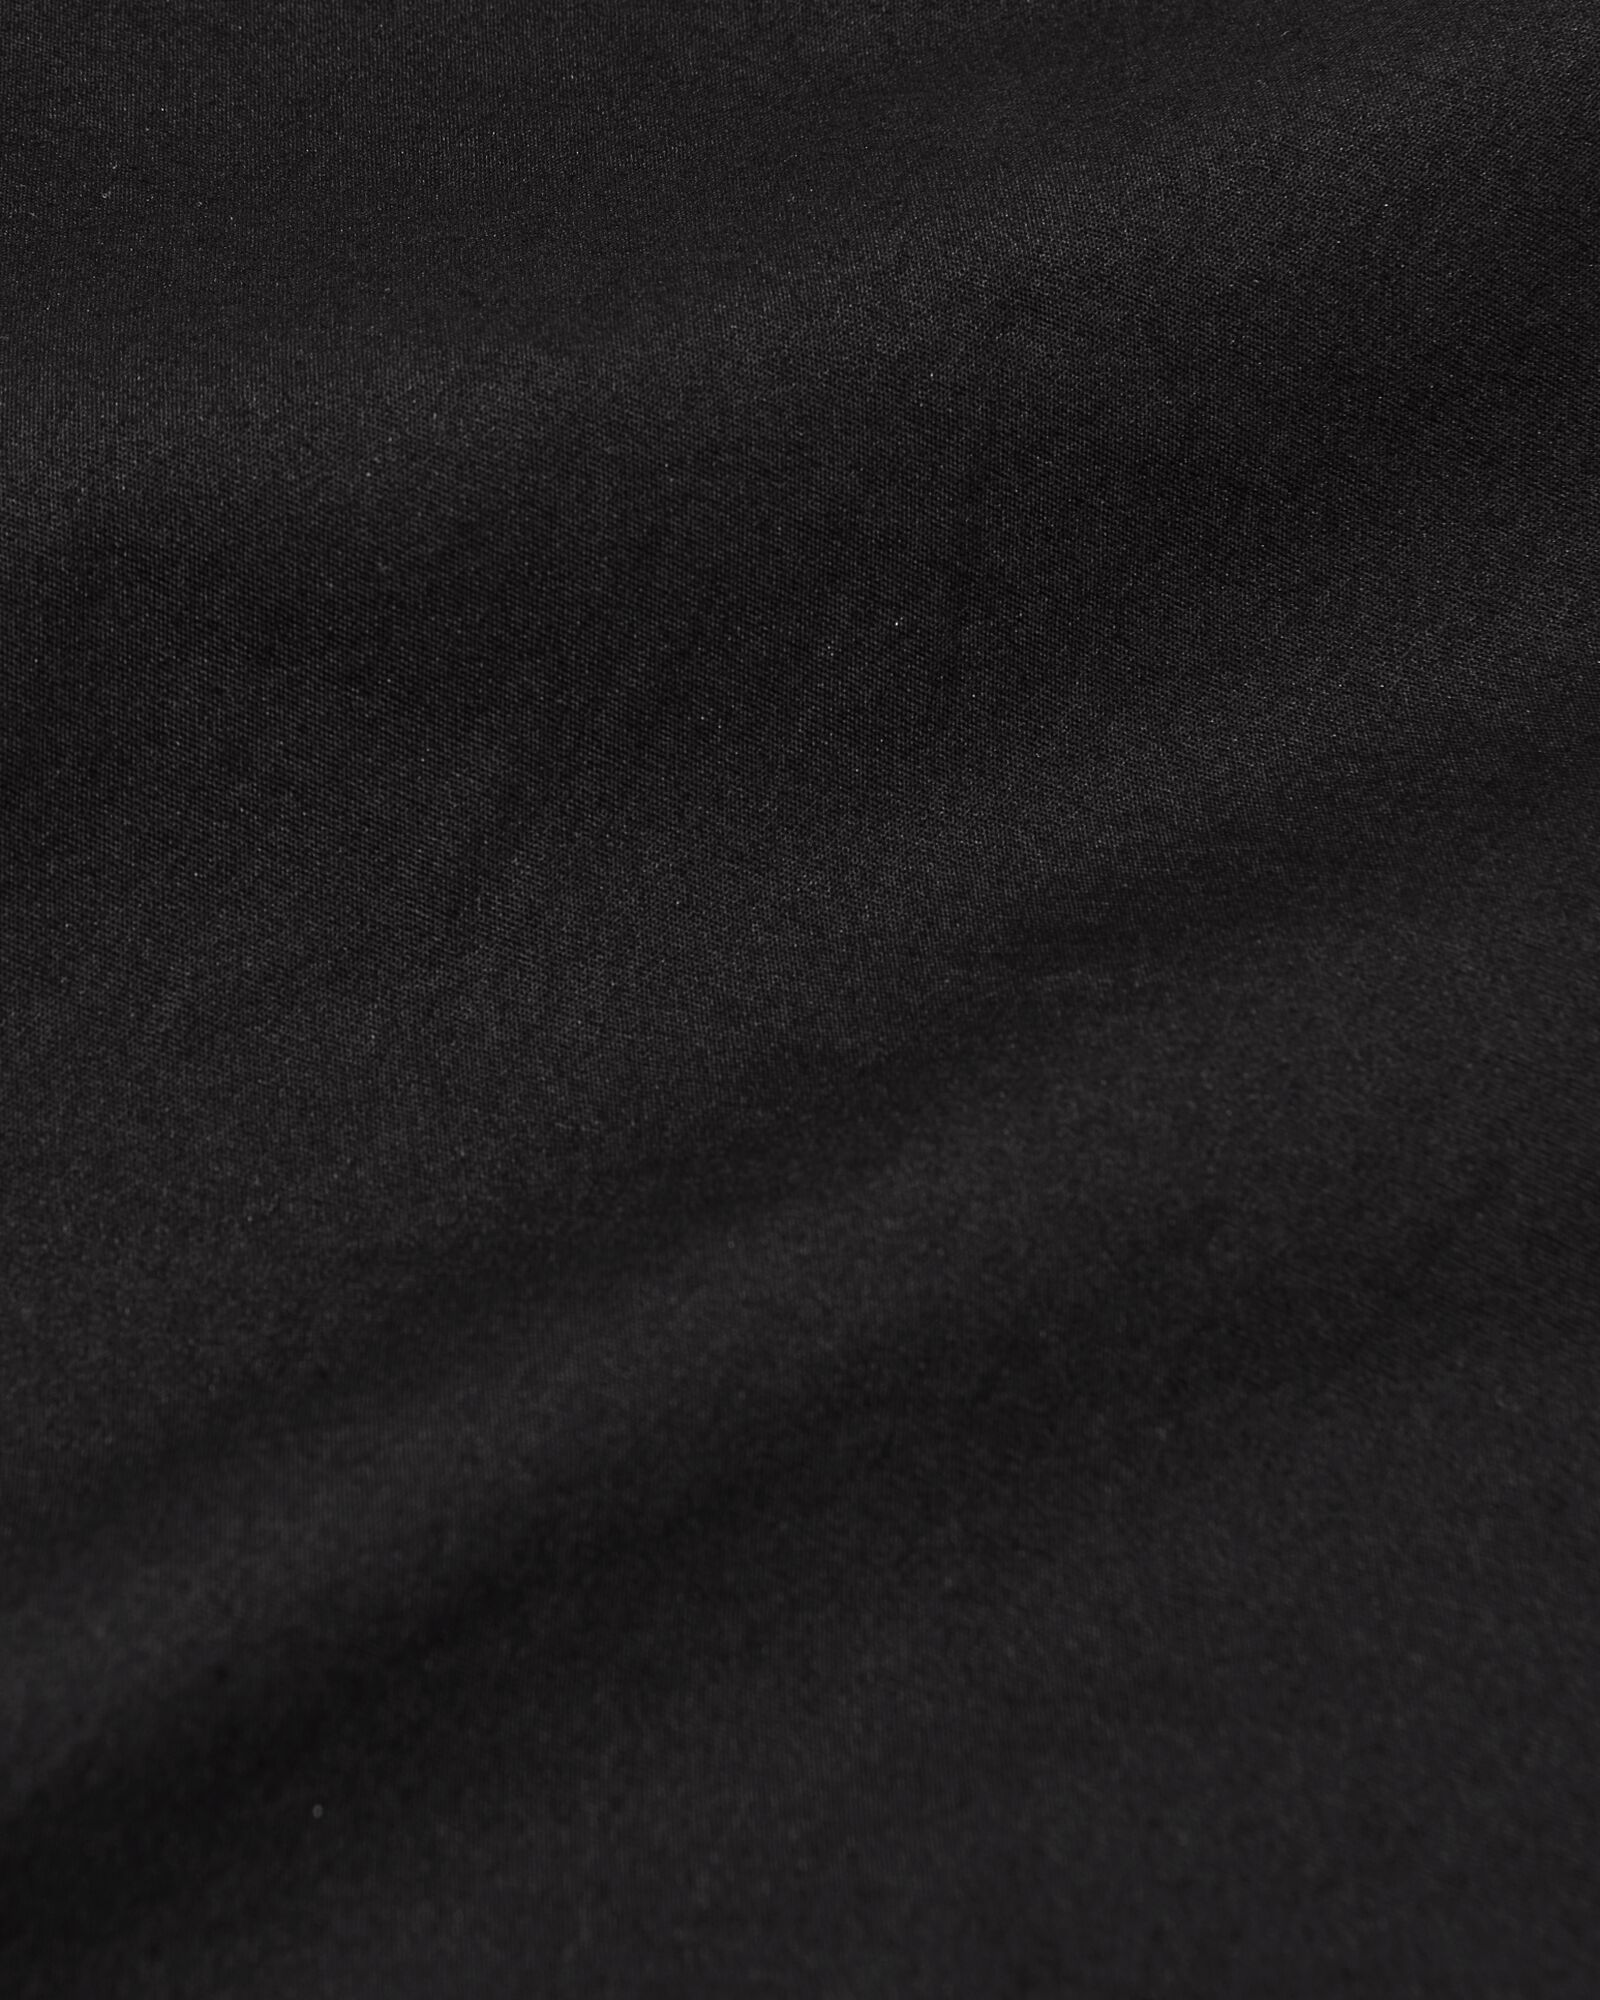 dames blouse Indie zwart zwart - 1000028458 - HEMA